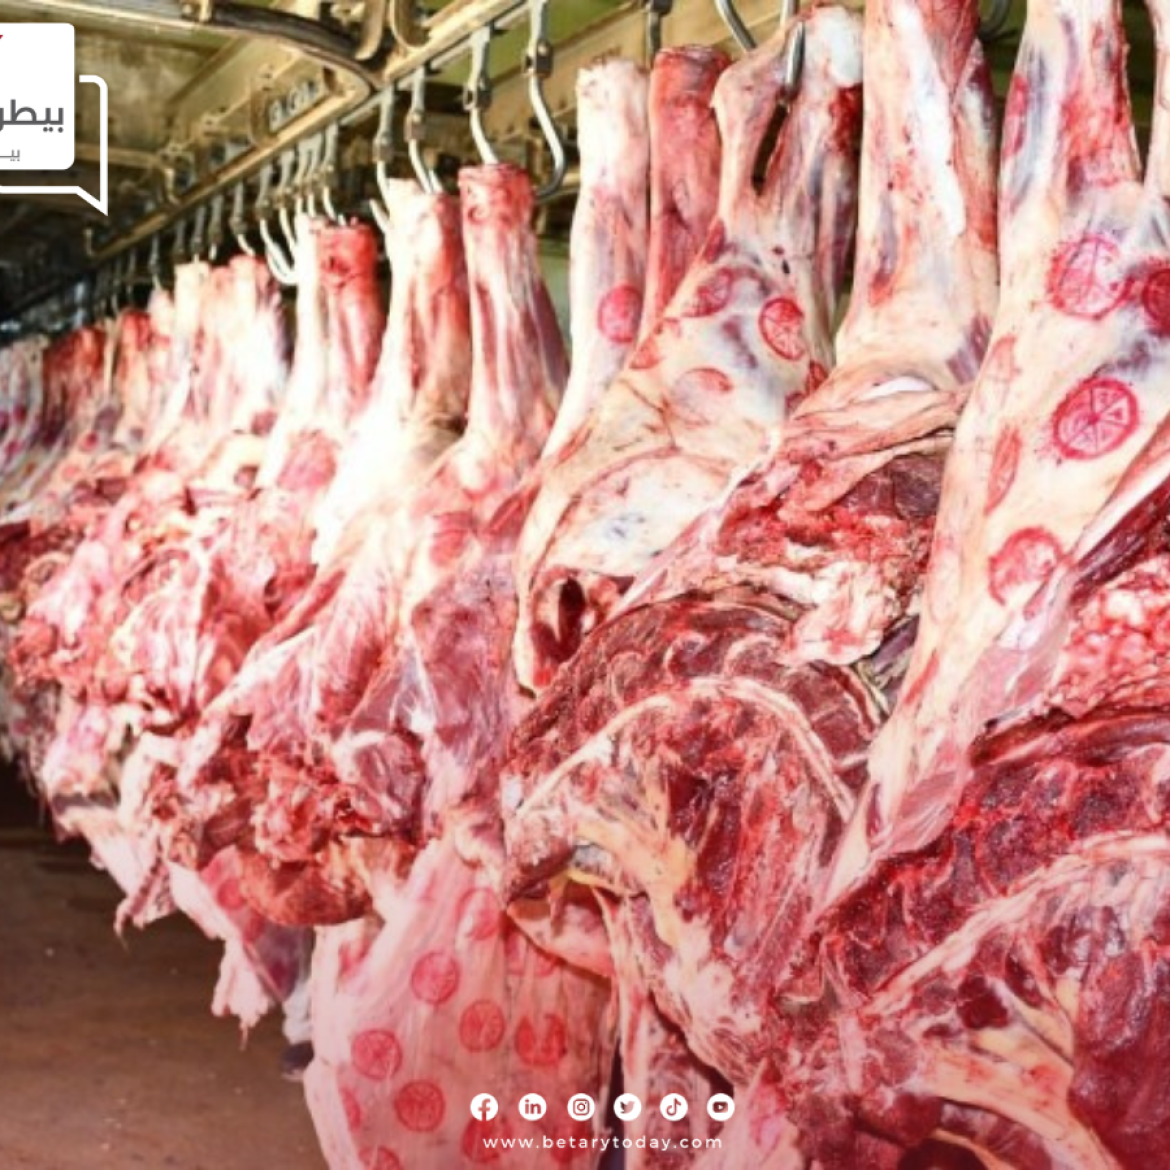 قبل أيام من عيد المسيحيين"... تعرف على أسعار اللحوم الحمراء البلدي اليوم السبت